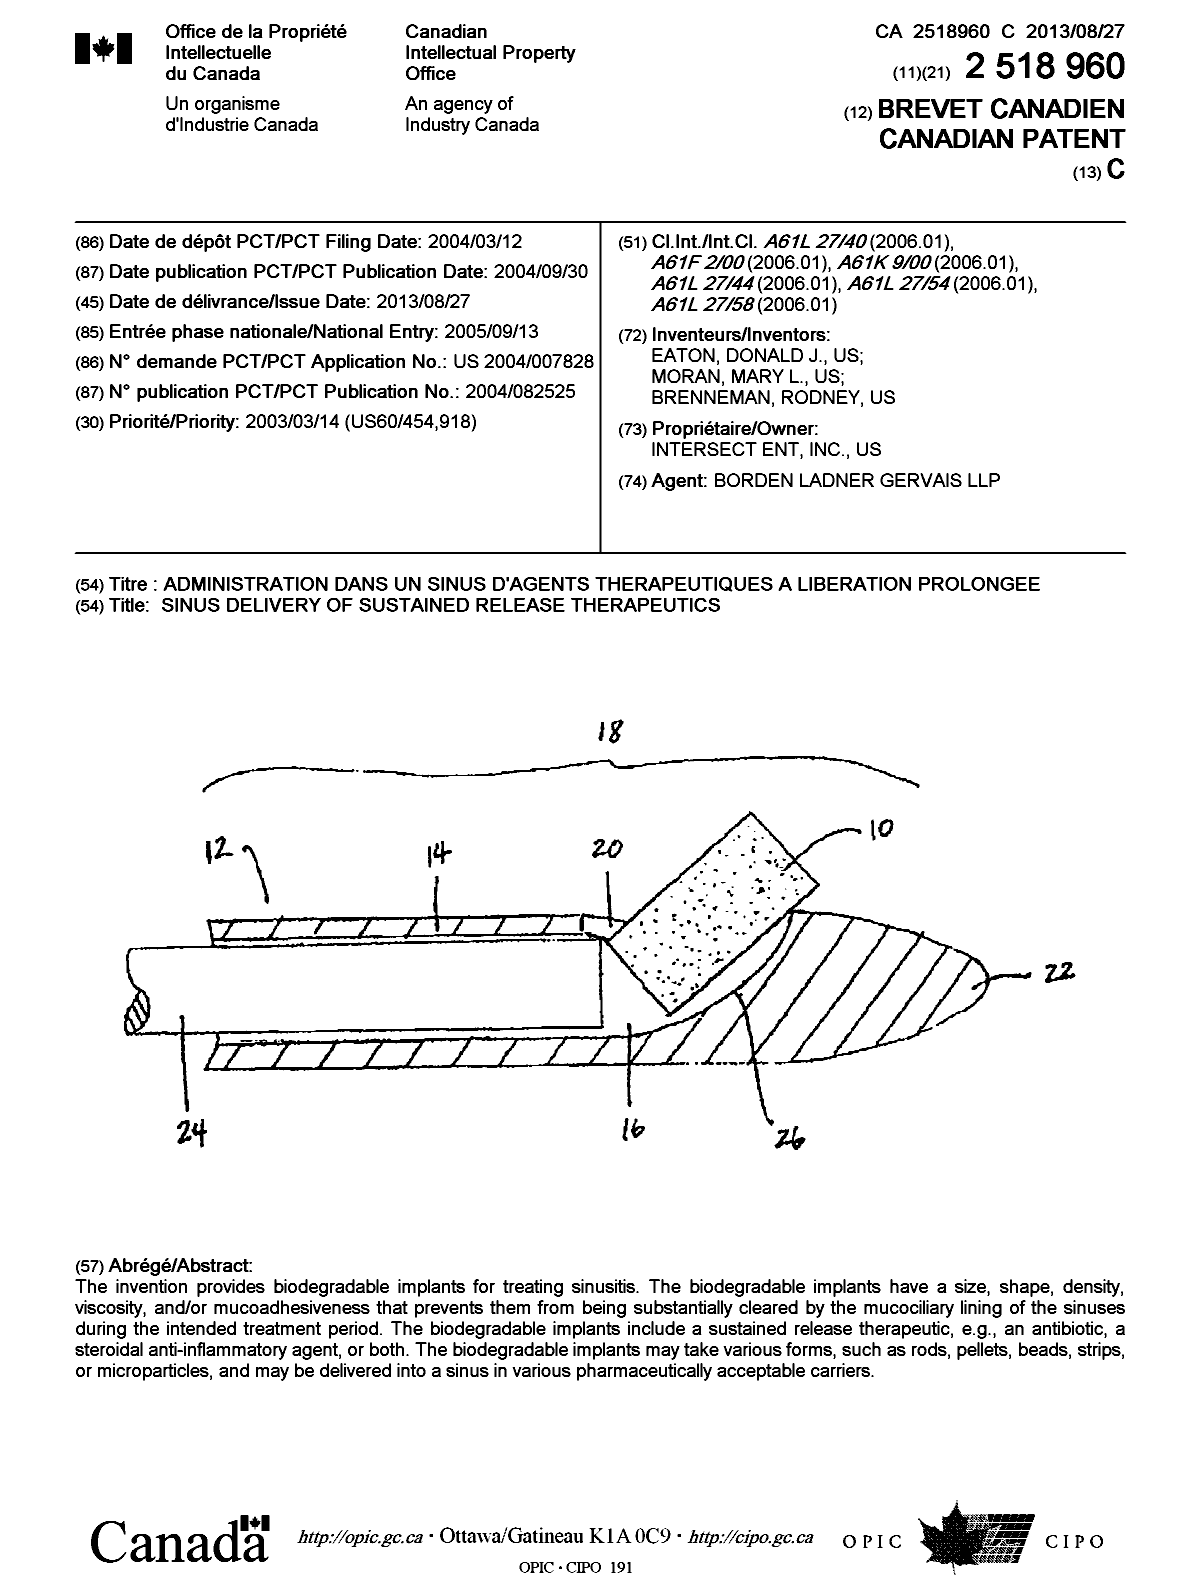 Document de brevet canadien 2518960. Page couverture 20121229. Image 1 de 1